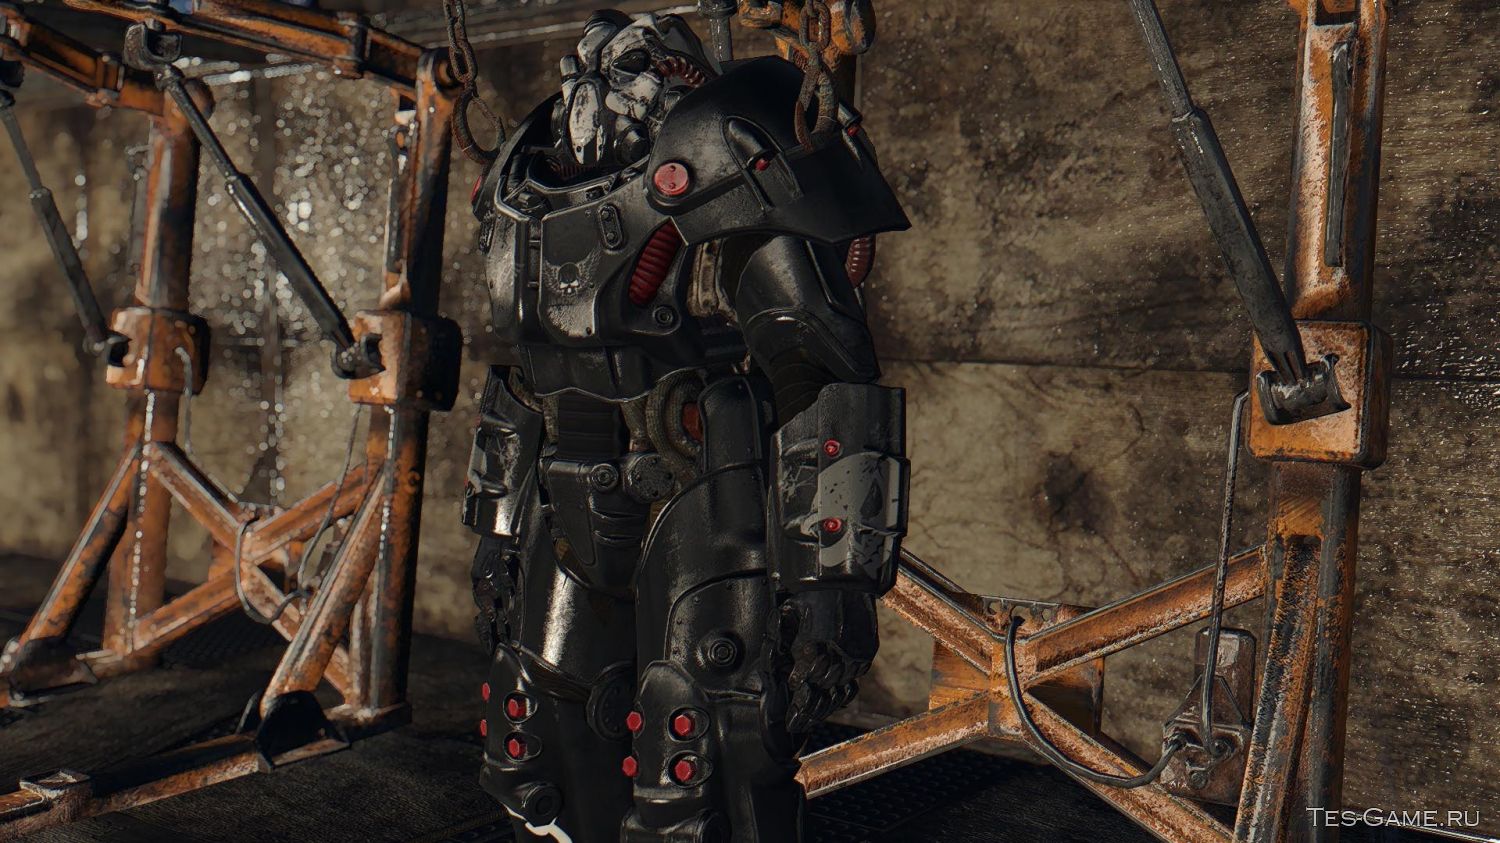 Fallout 4 верстак для роботов все модификации фото 41